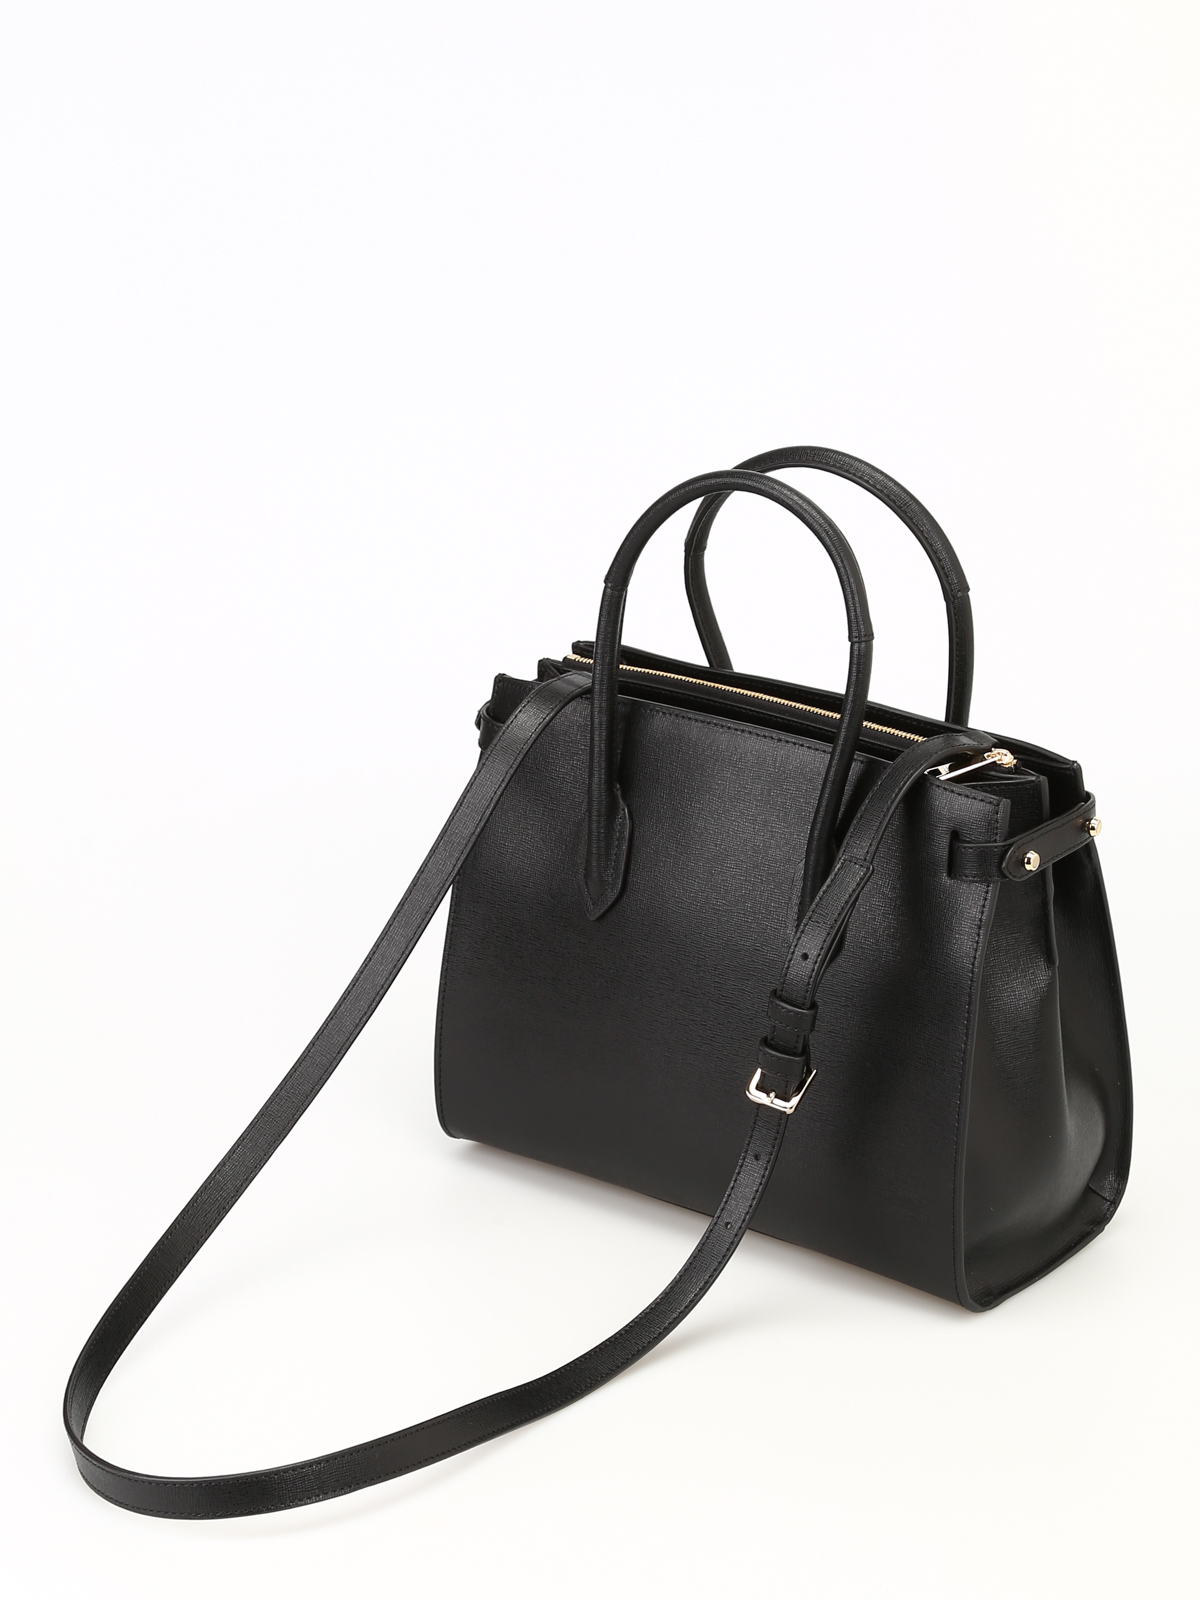 Furla - Pin S black saffiano leather 